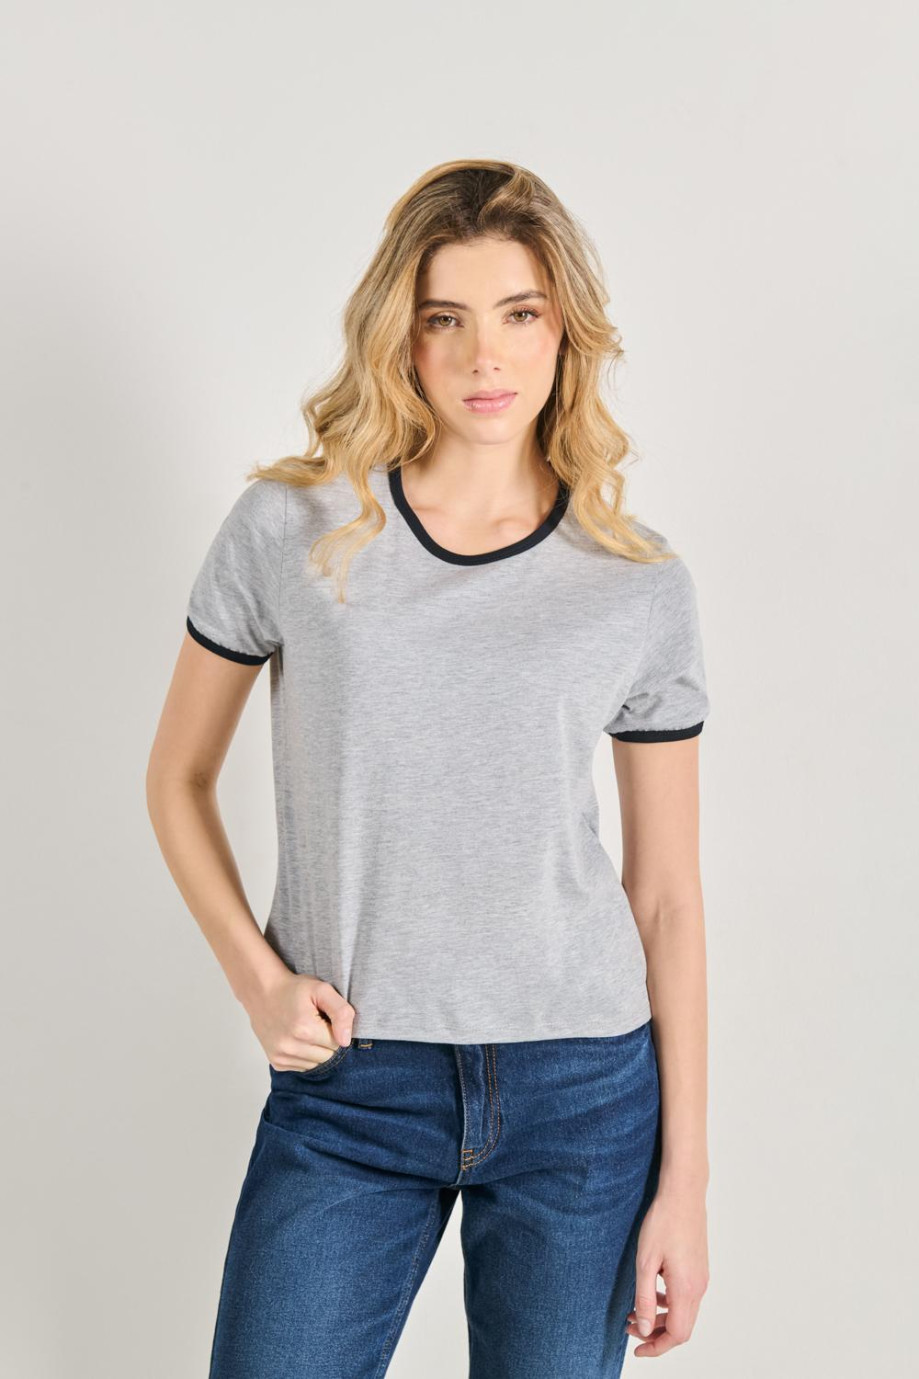 Camiseta unicolor en algodón manga corta con contrastes